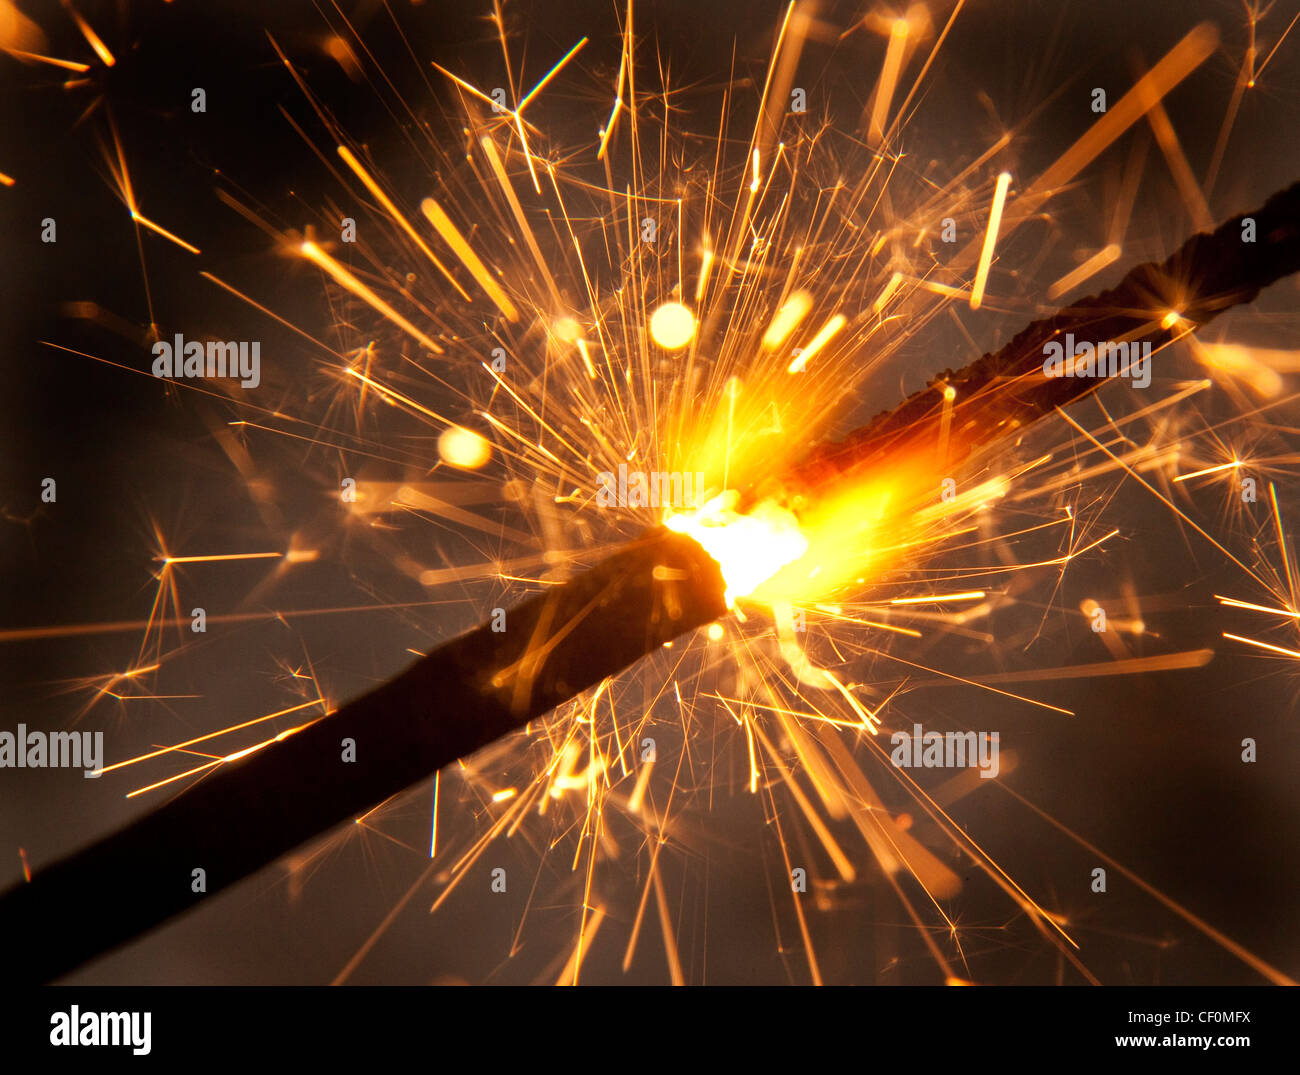 Eine brennende Wunderkerze Feuerwerk Nahaufnahme spucken Funken Stockfoto